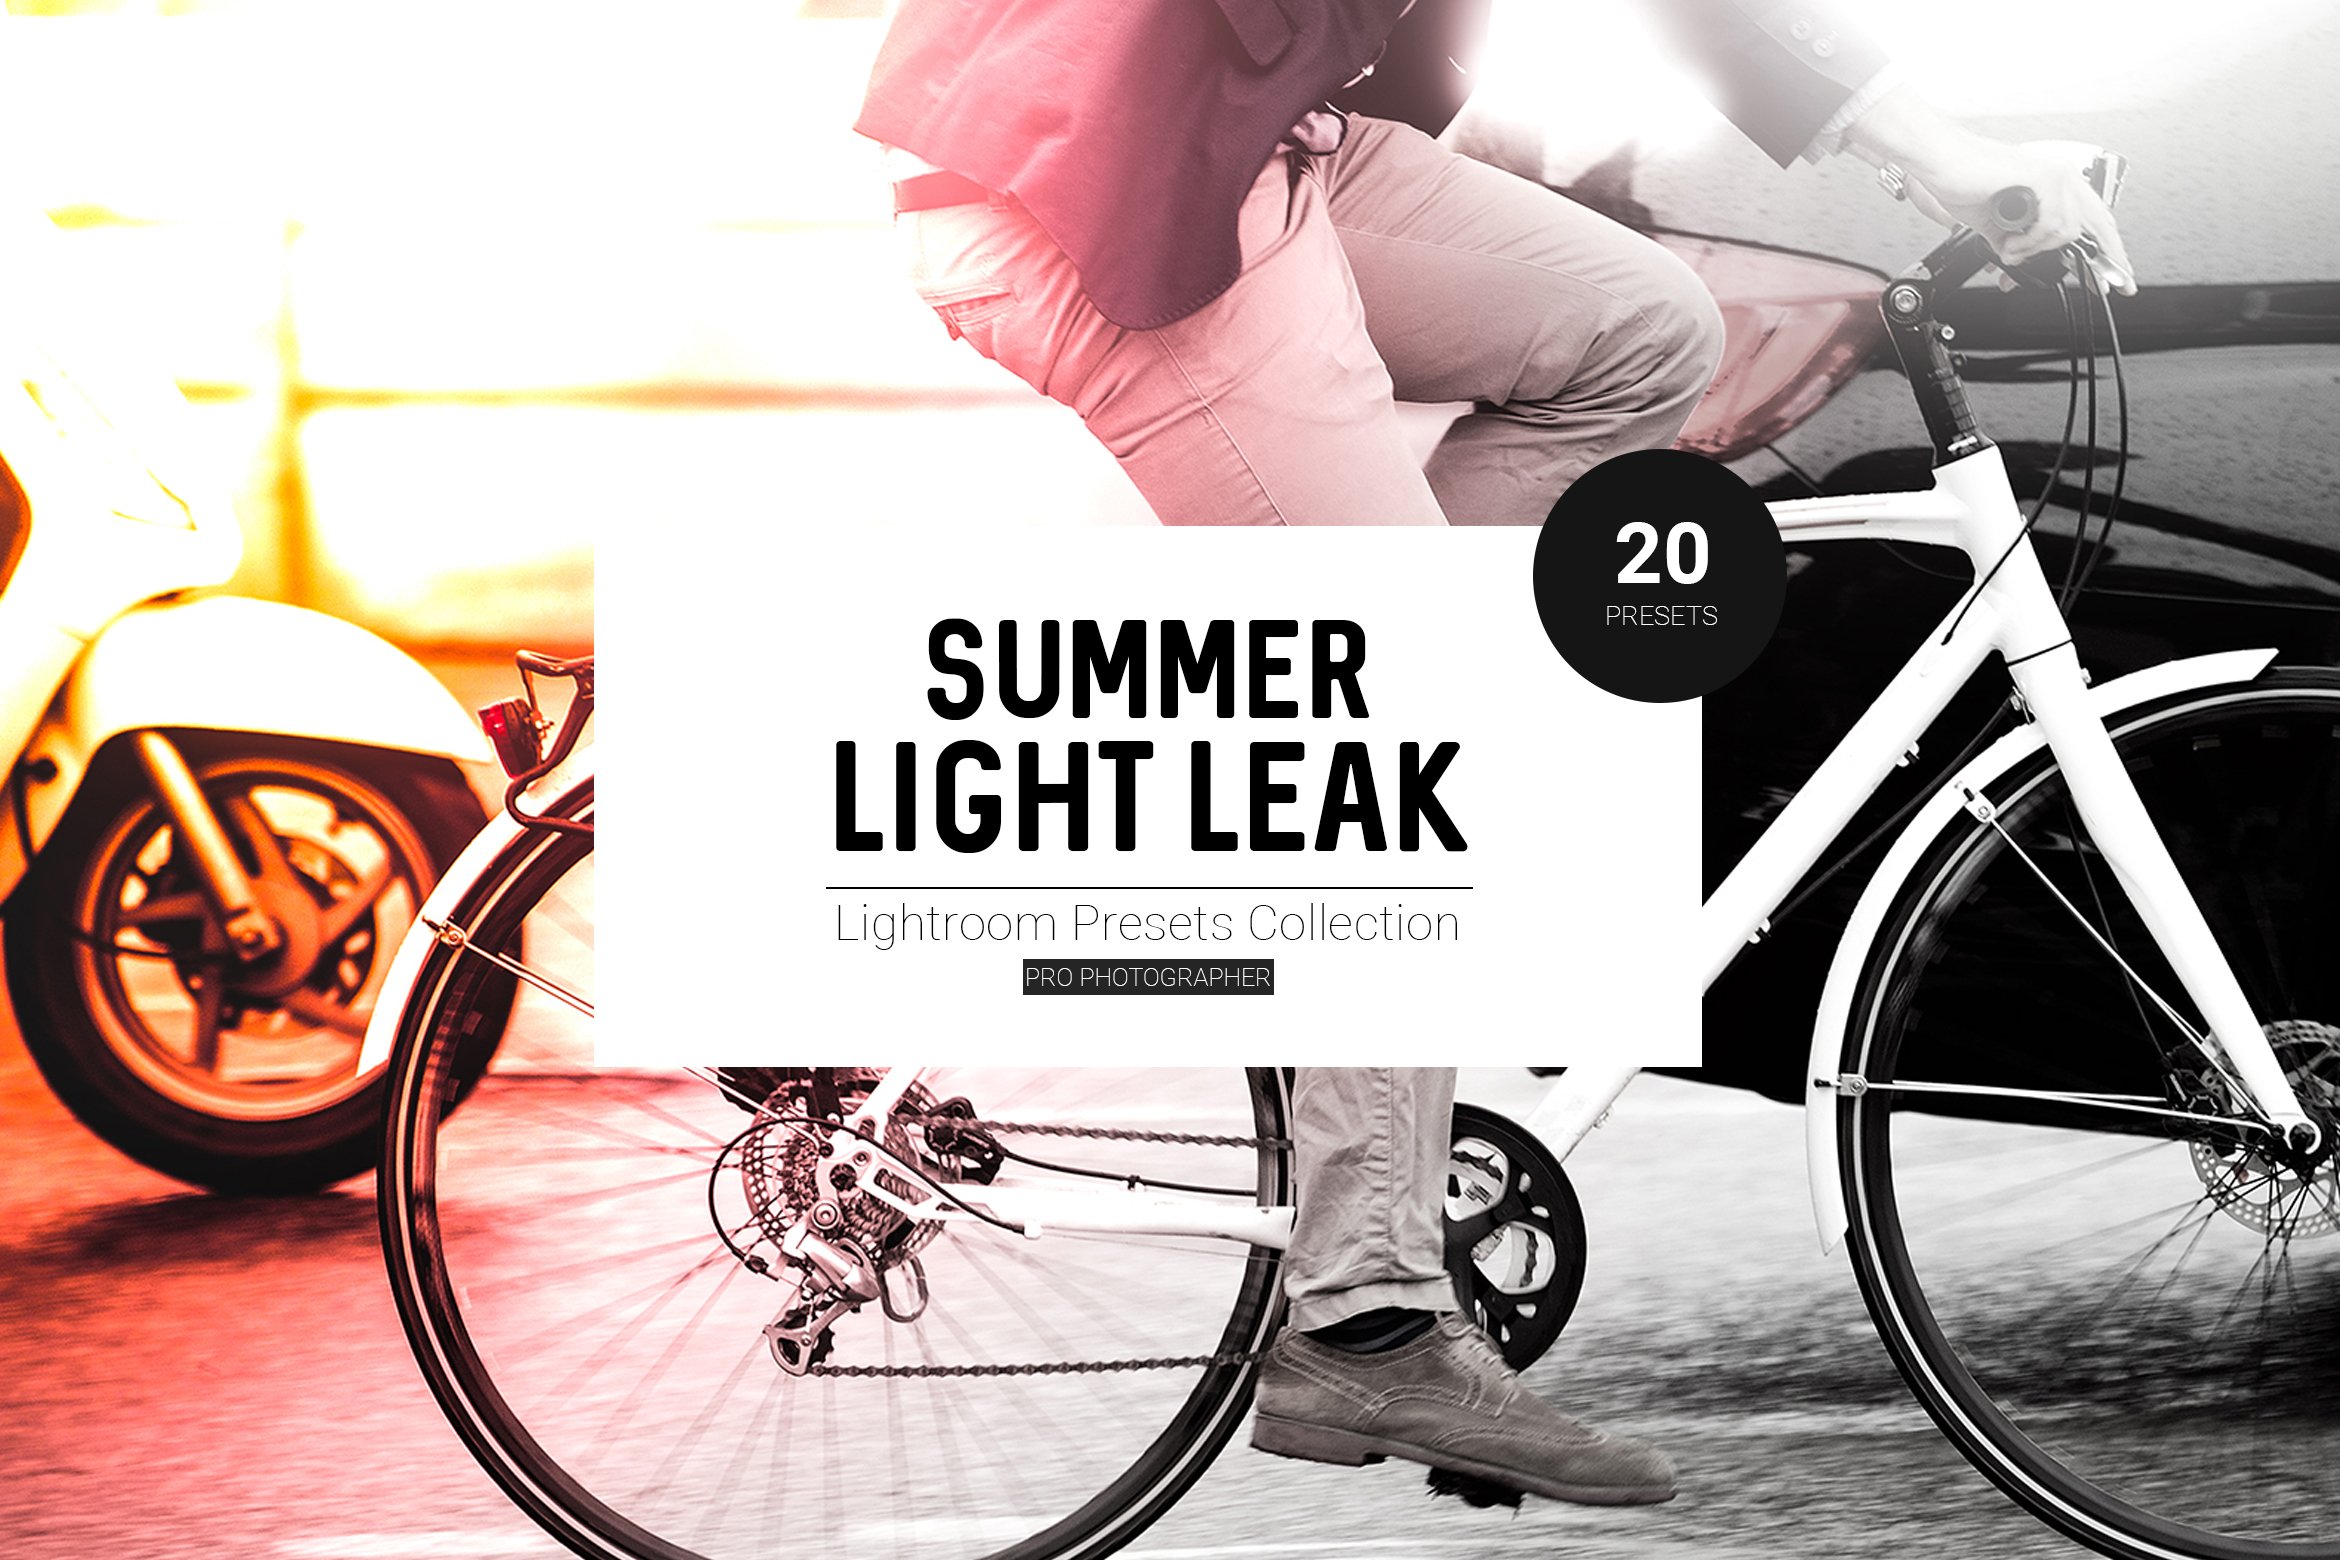 Summer Light Leak Lightroom Presetscover image.